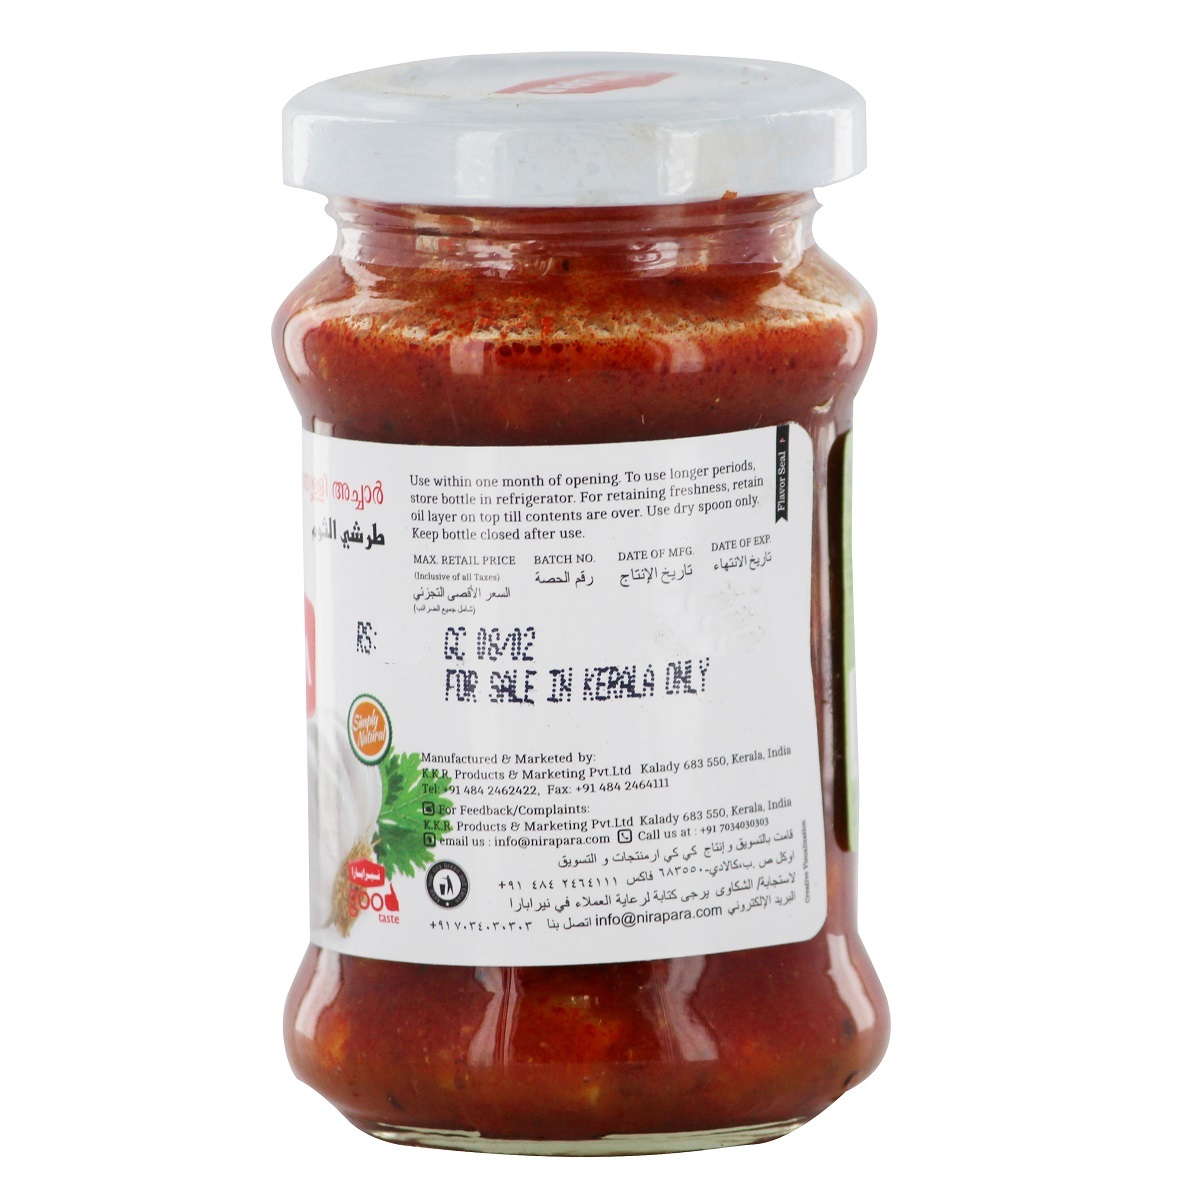 Nirapara Garlic Pickle 150g